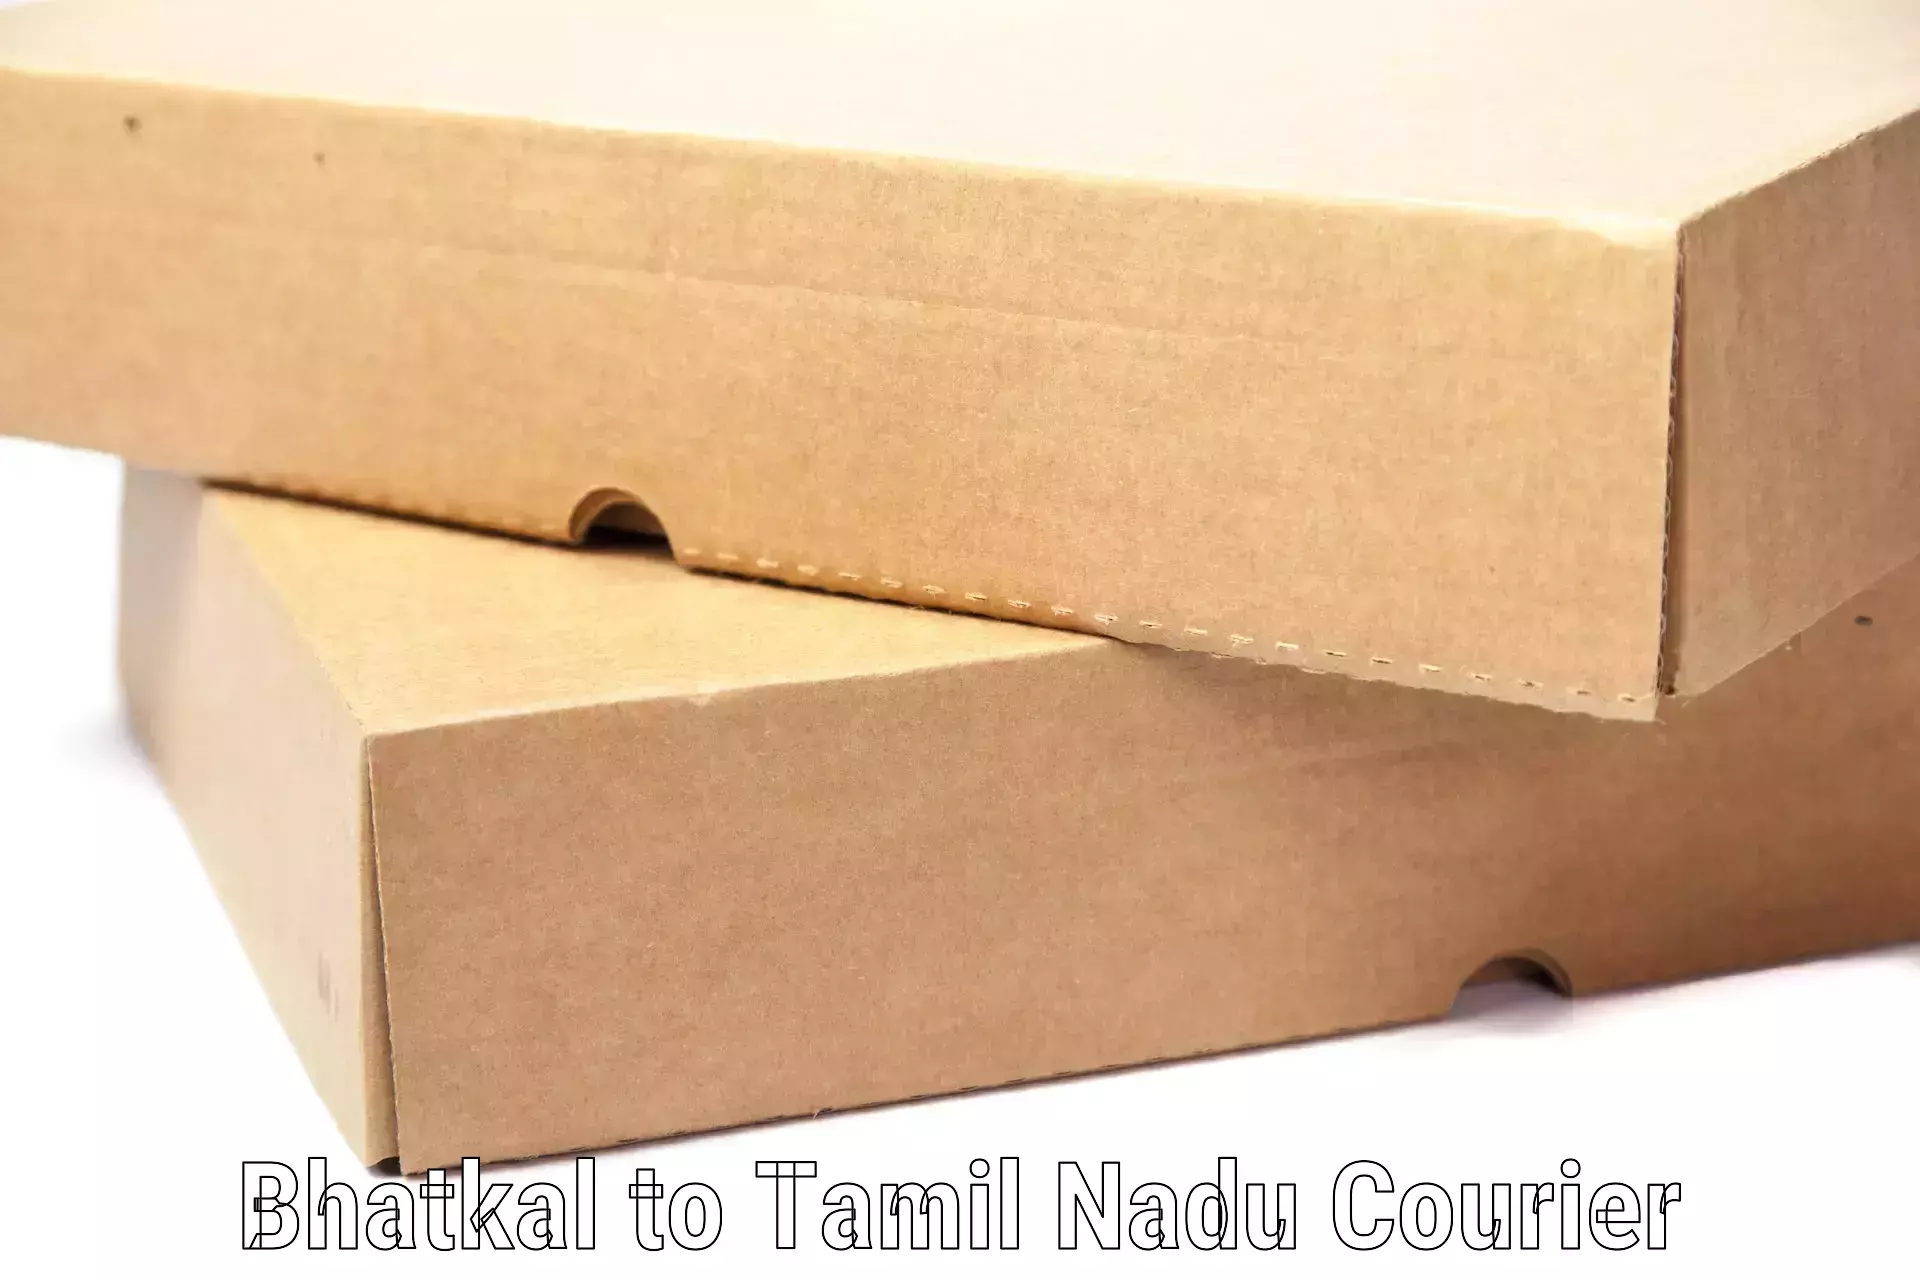 Luggage shipment specialists Bhatkal to Tamil Nadu